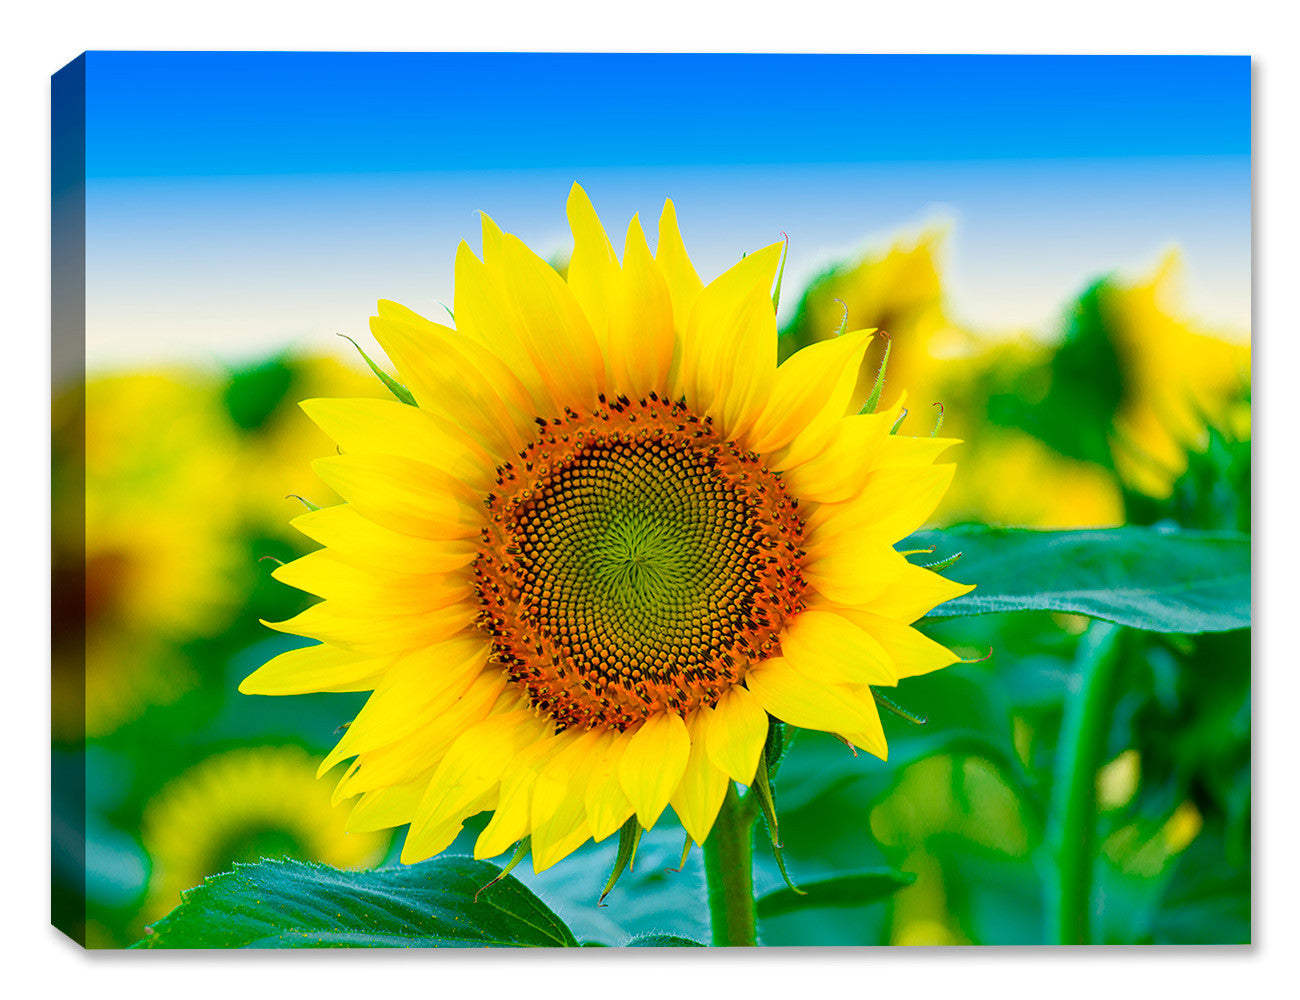 Sunflowers in Field of Flowers - Canvas Art Plus